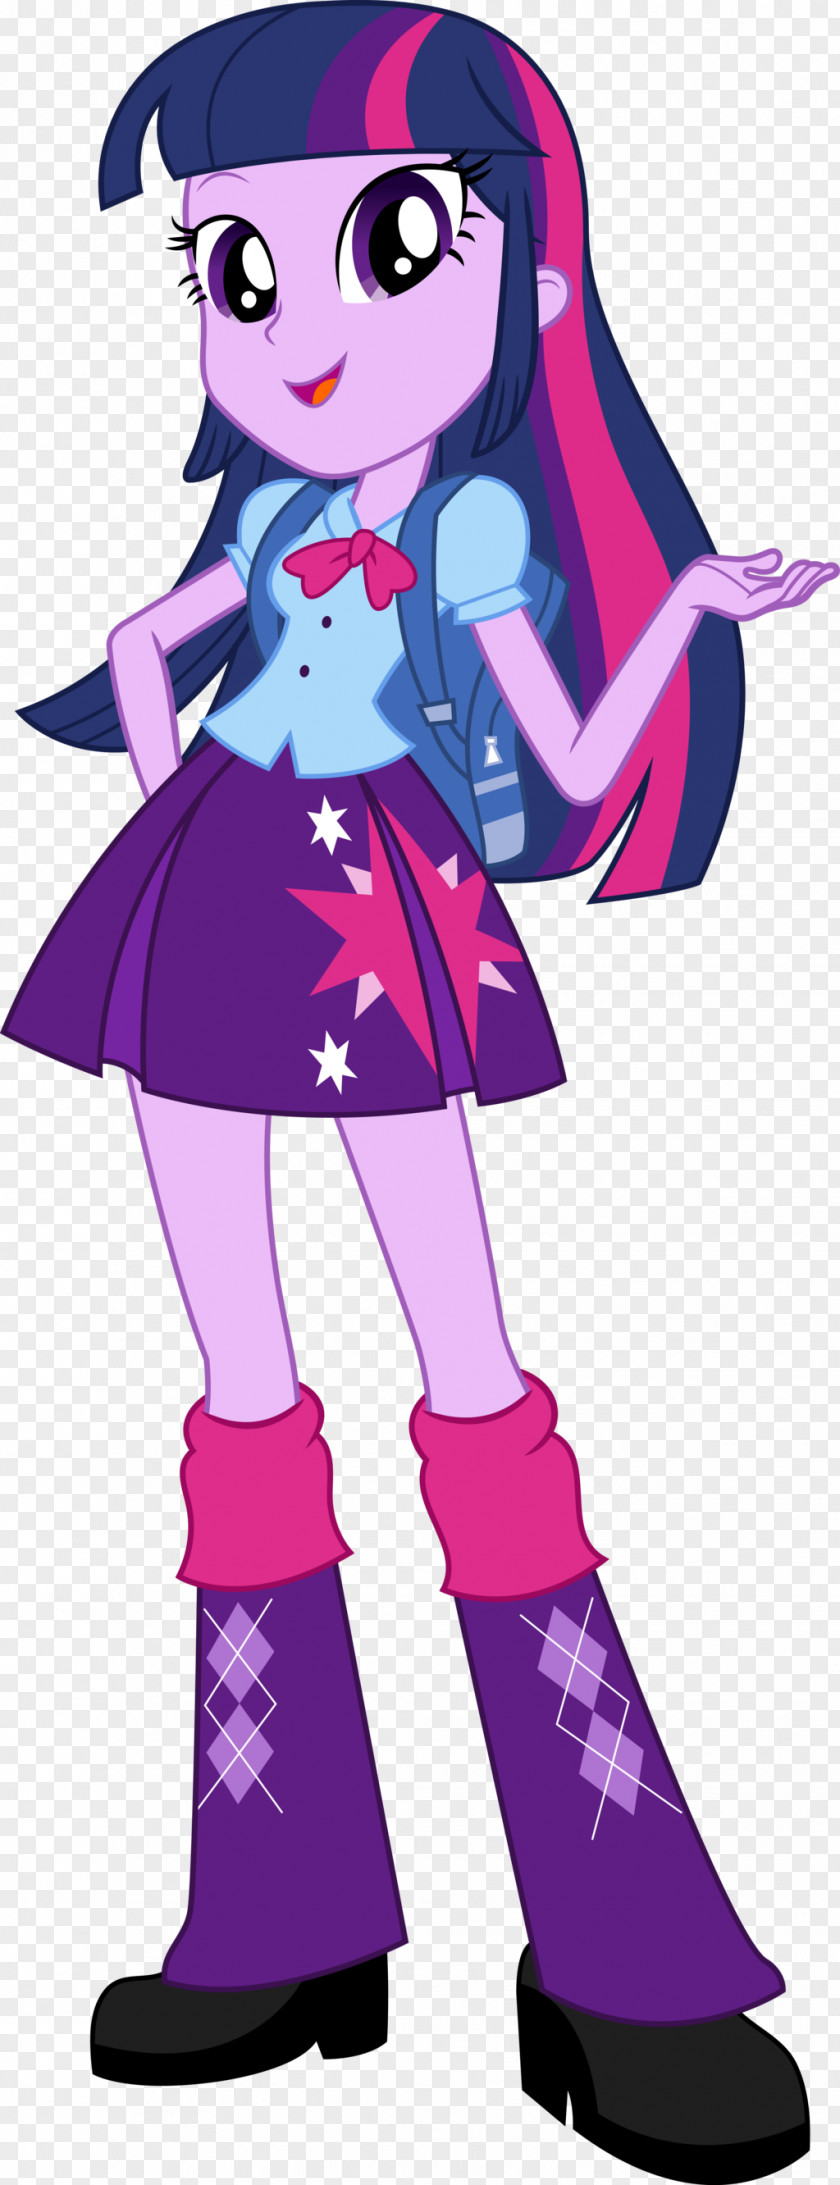 Twilight Sparkle Pinkie Pie Applejack My Little Pony: Equestria Girls PNG